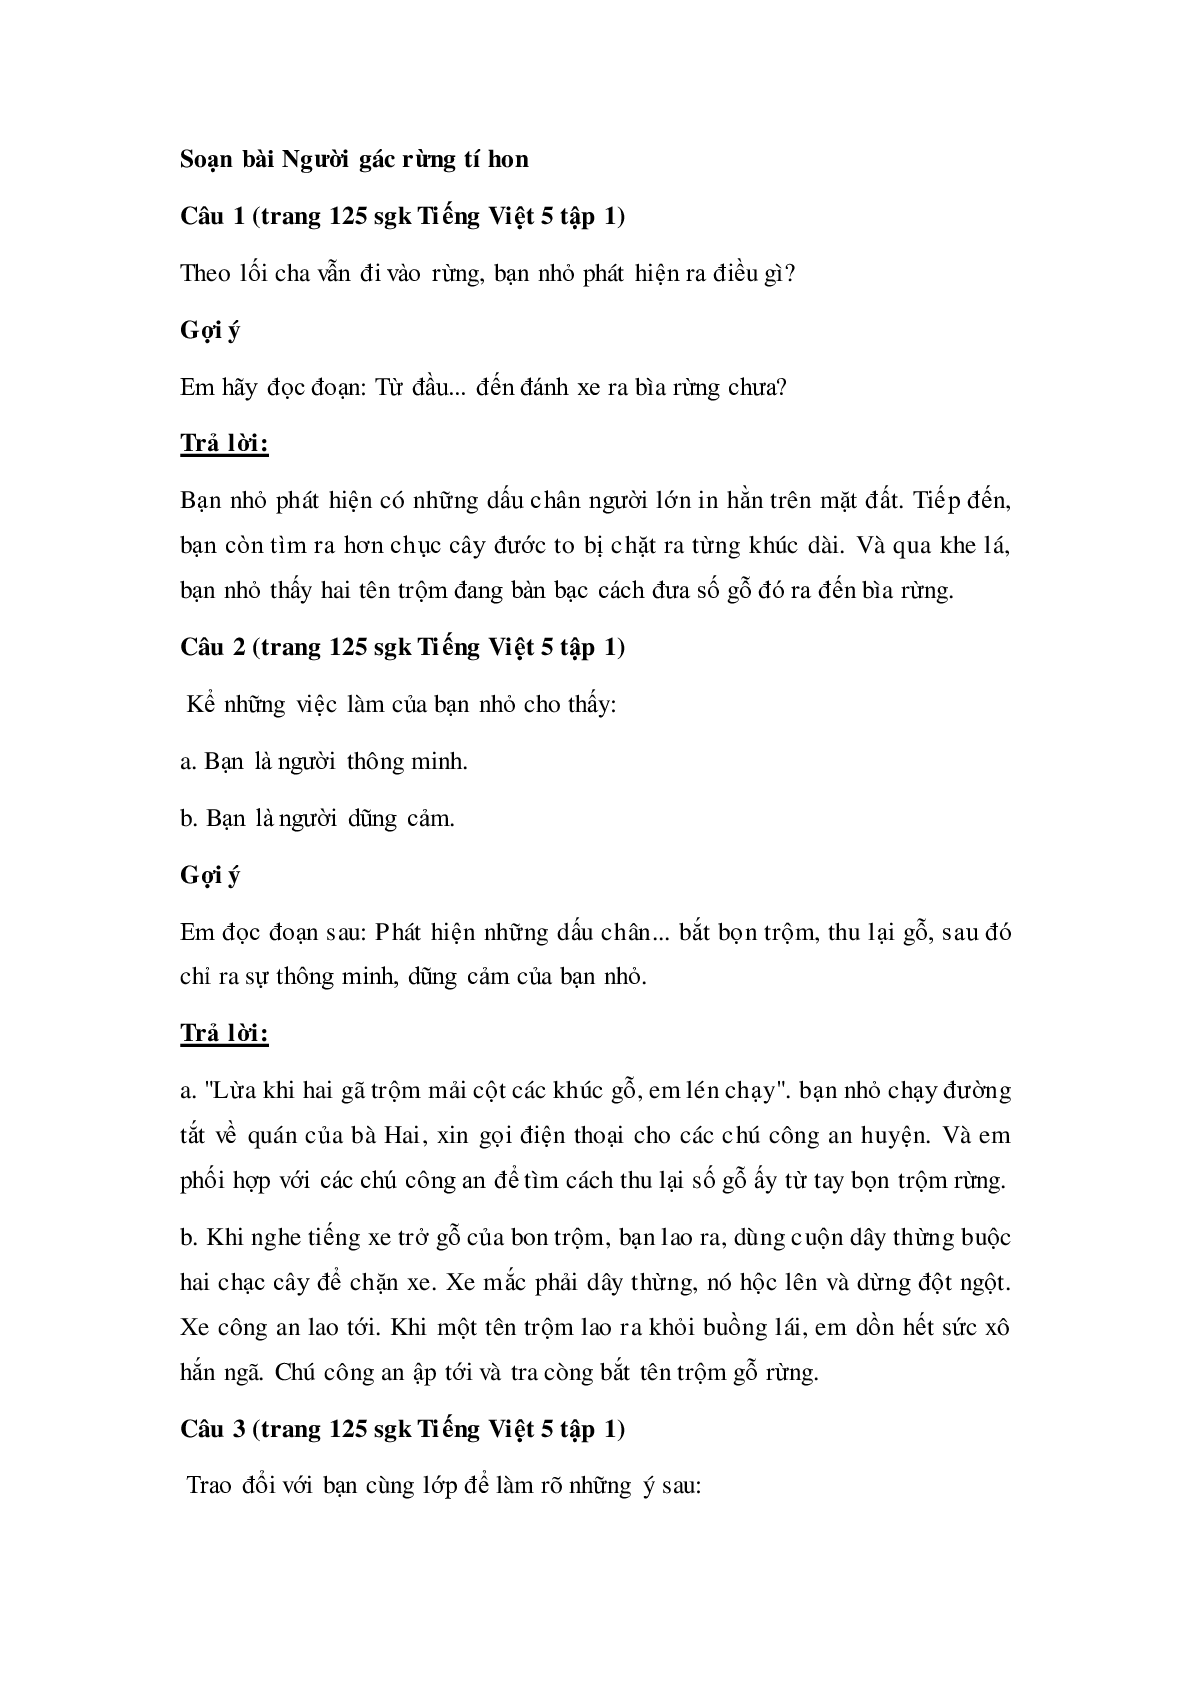 Soạn Tiếng Việt lớp 5: Tập đọc: Người gác rừng tí hon mới nhất (trang 2)